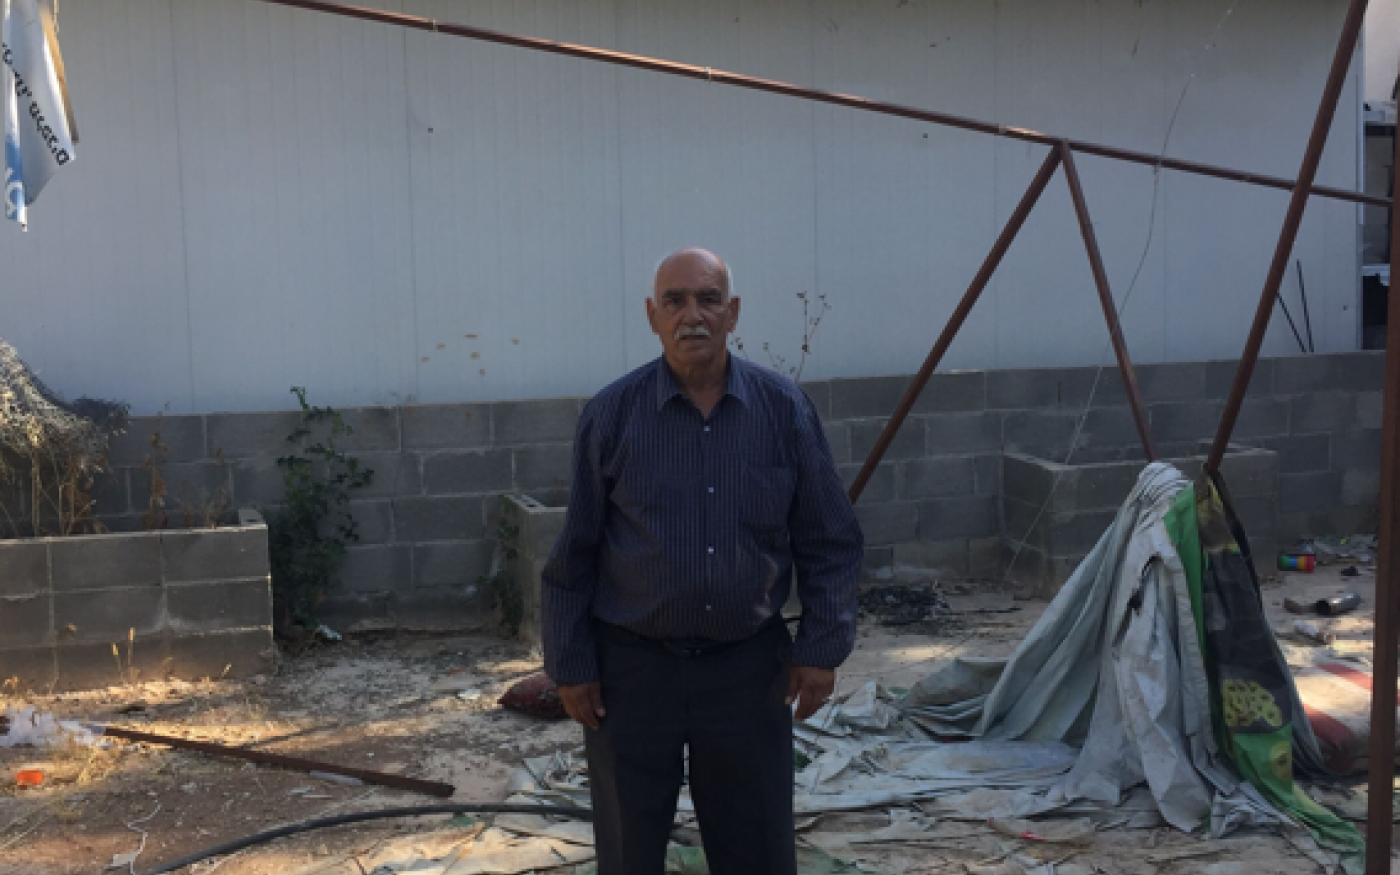 Adel Jabori, un habitant de Wadi Yasul, affirme que l’objectif ultime est de déraciner les Palestiniens, leurs bâtiments, leurs arbres et leurs familles (MEE/Jan-Peter Westad)